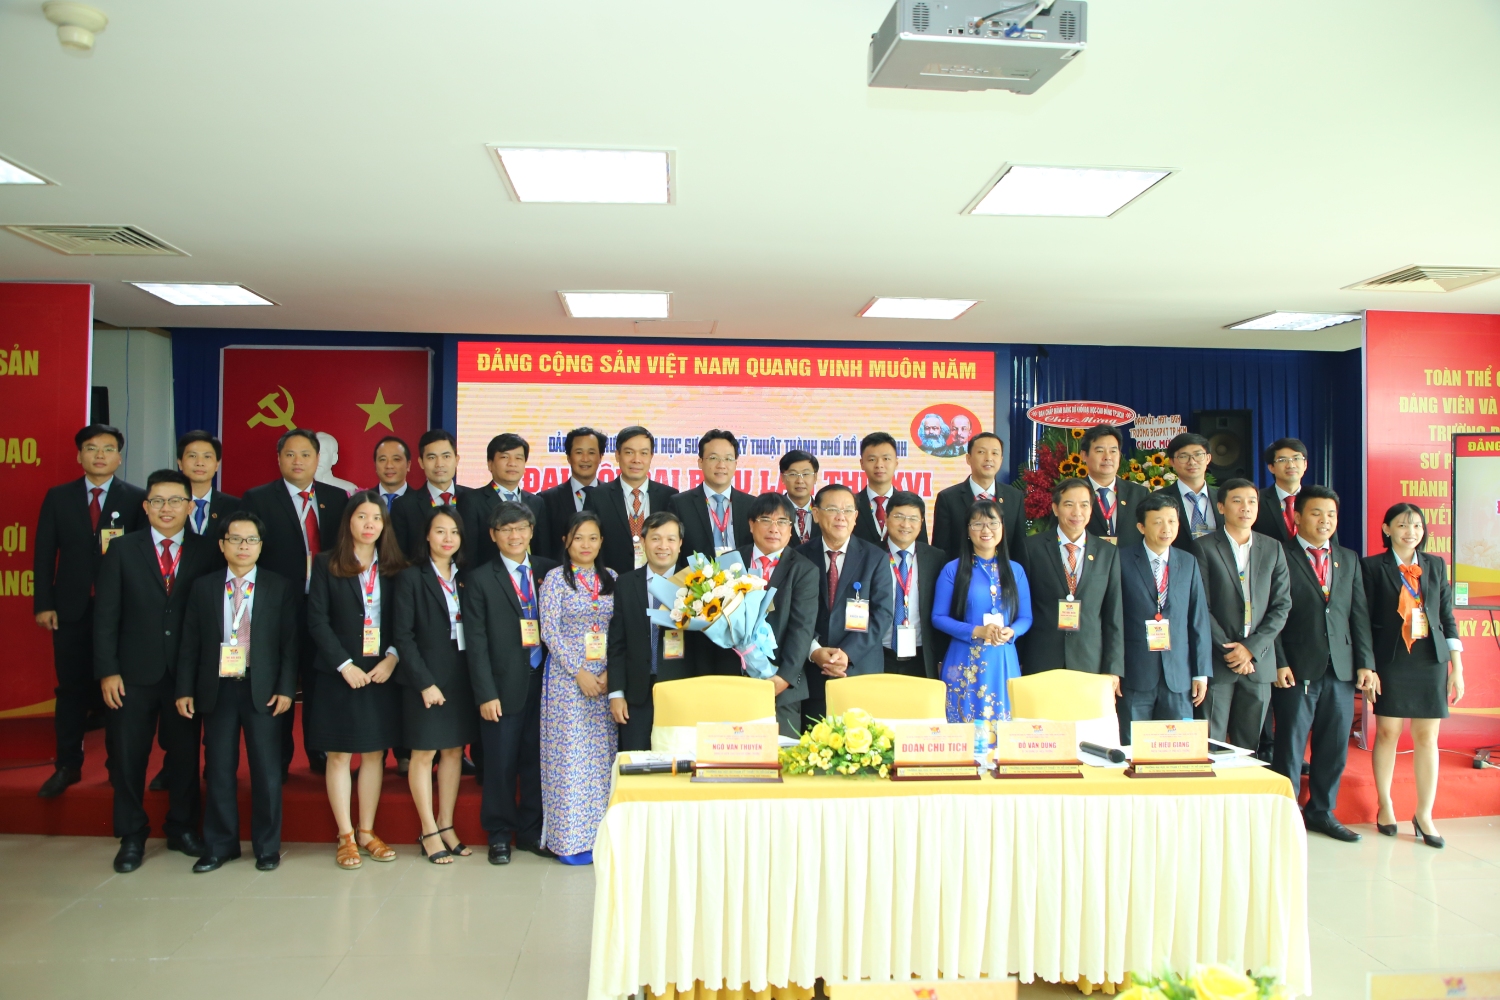 Đoàn đại biểu dự Đại hội Đảng bộ Khối Đại học Cao đẳng Thành phố Hồ Chí Minh nhiệm kỳ VI (2020-2025) ra mắt đại hội